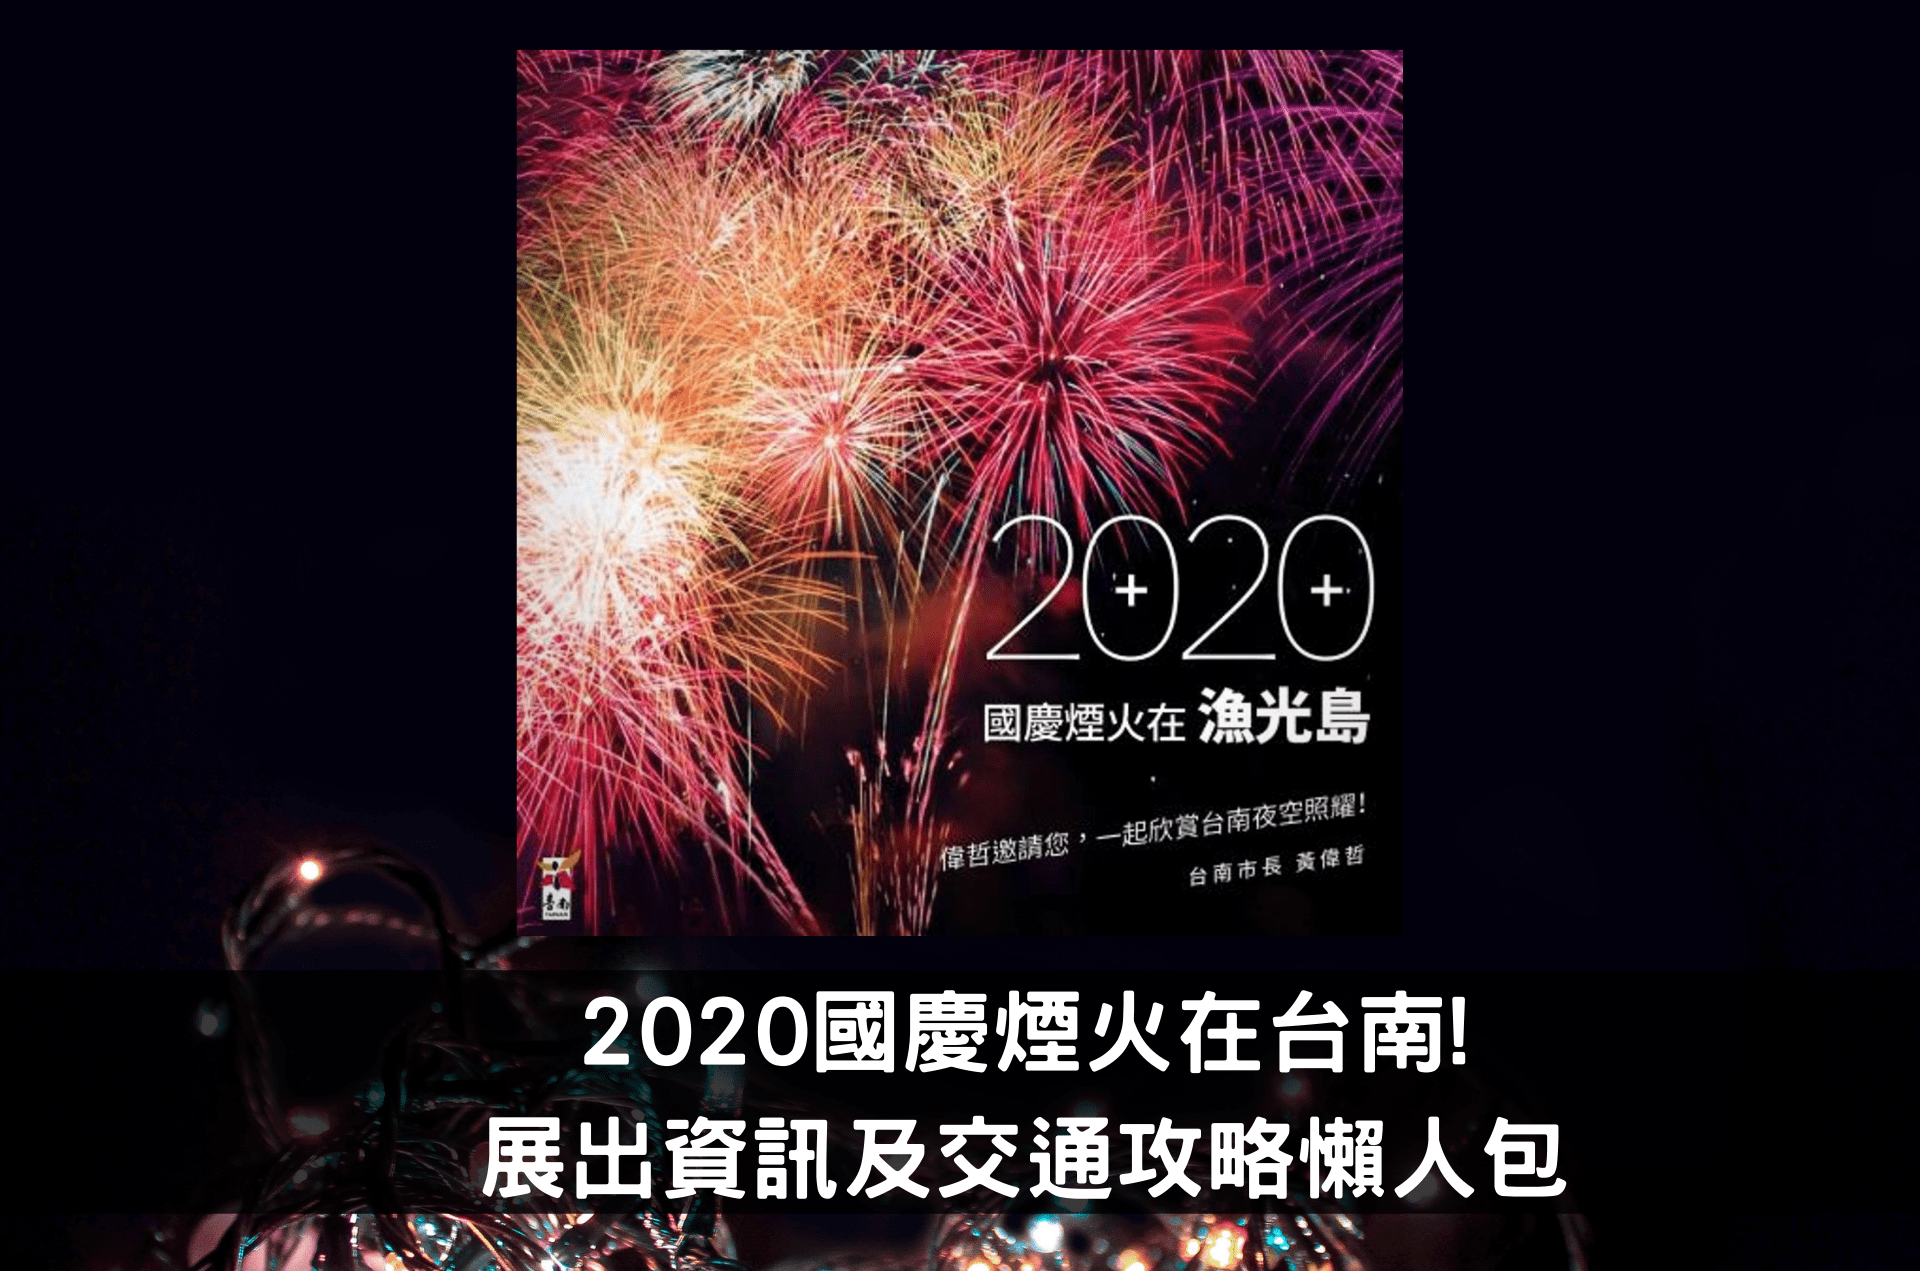 2020國慶煙火在台南!展出資訊及交通攻略懶人包